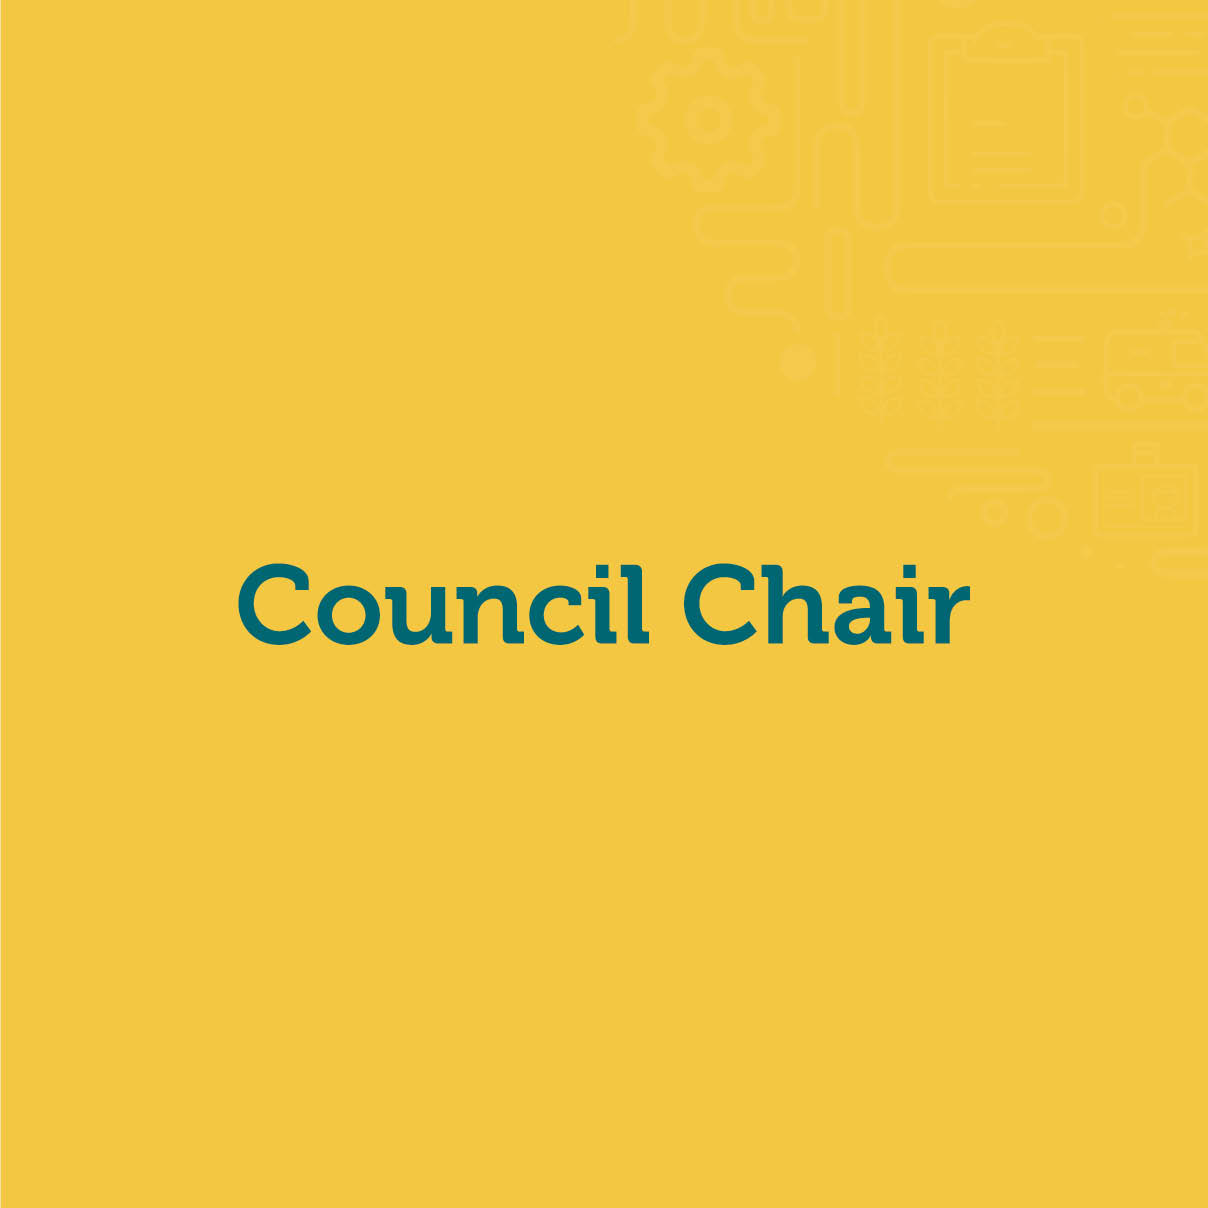 Council Chair